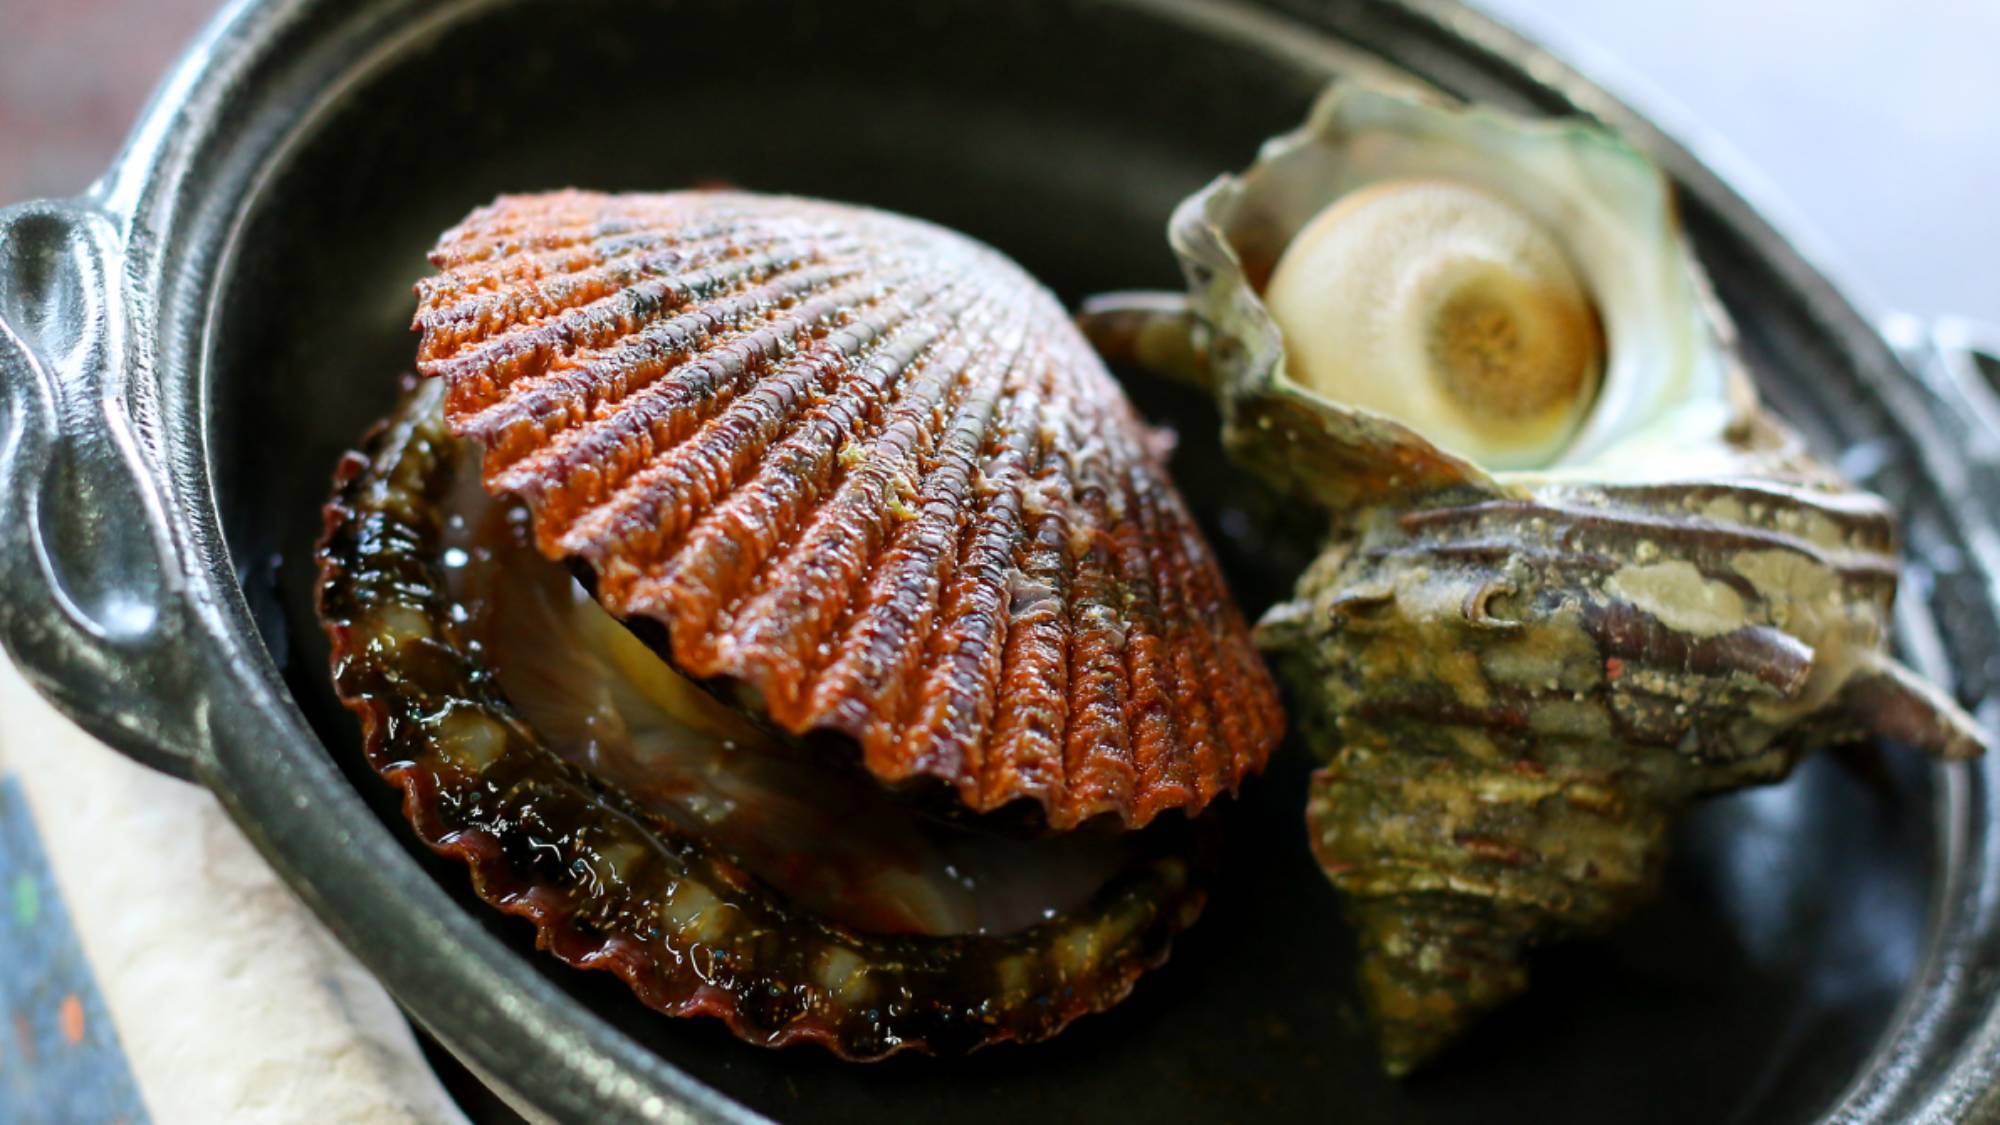 ・【お料理イメージ】仕入れによって種類の異なる貝類